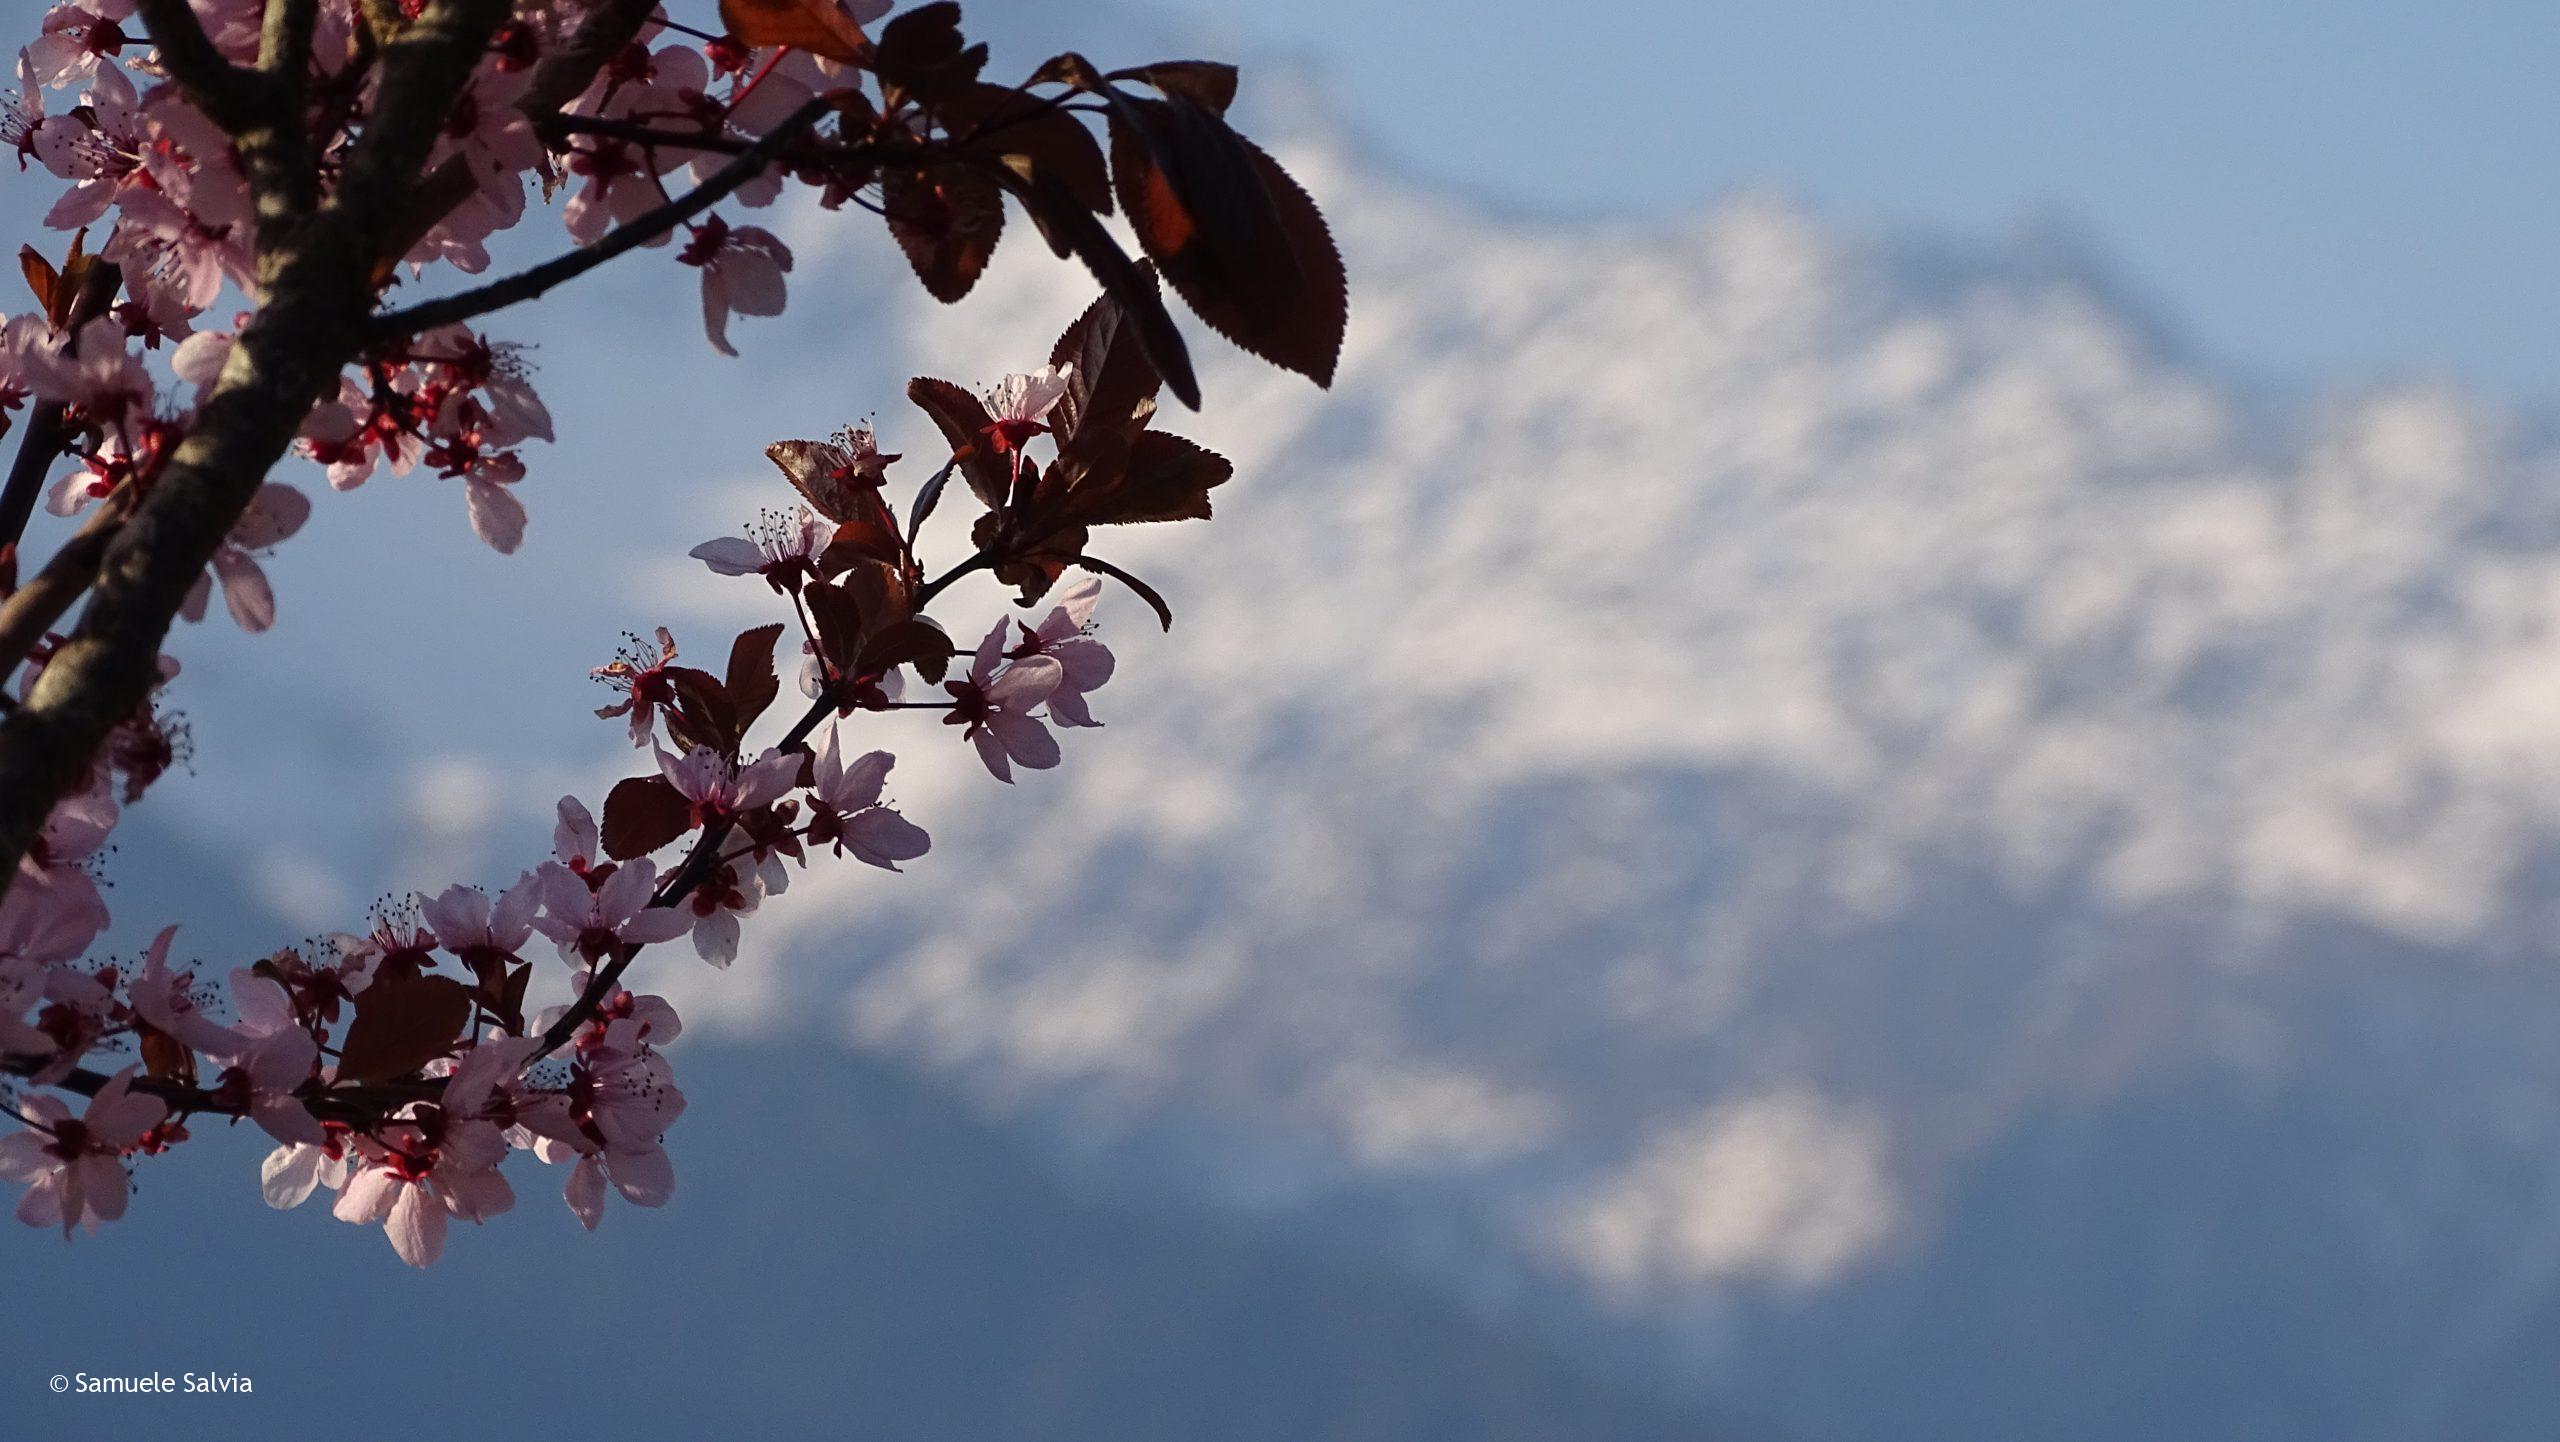 Sboccia la primavera a Teglio, mentre sullo sfondo le montagne sono ancora ben innevate.